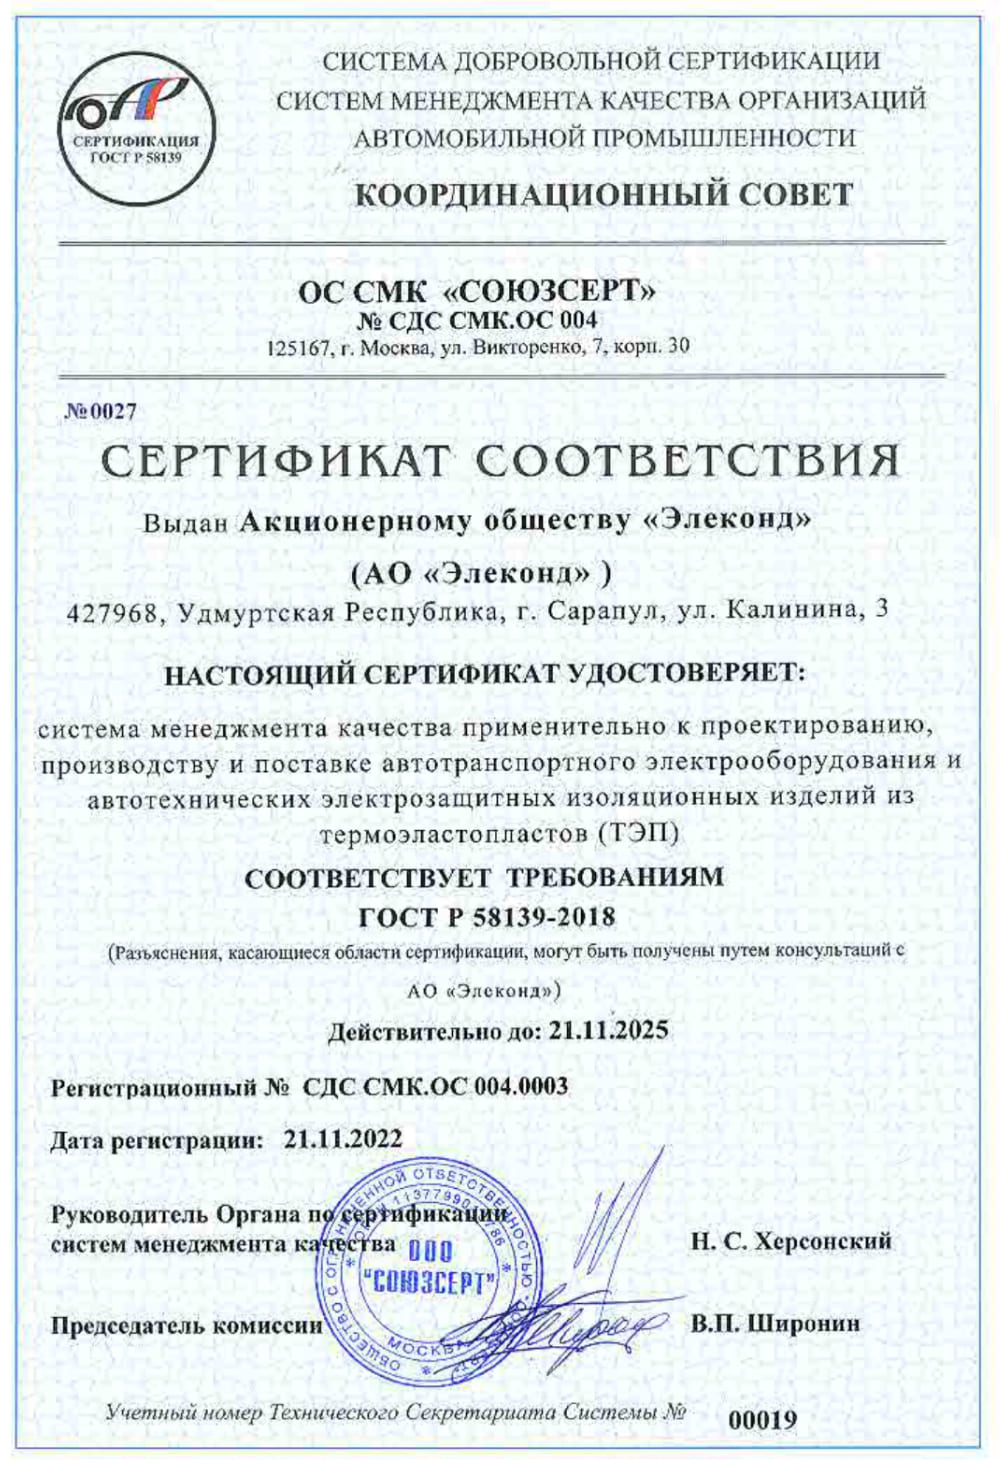 Сертификат соответствия "СОЮЗСЕРТ" по ГОСТ 58139-2018